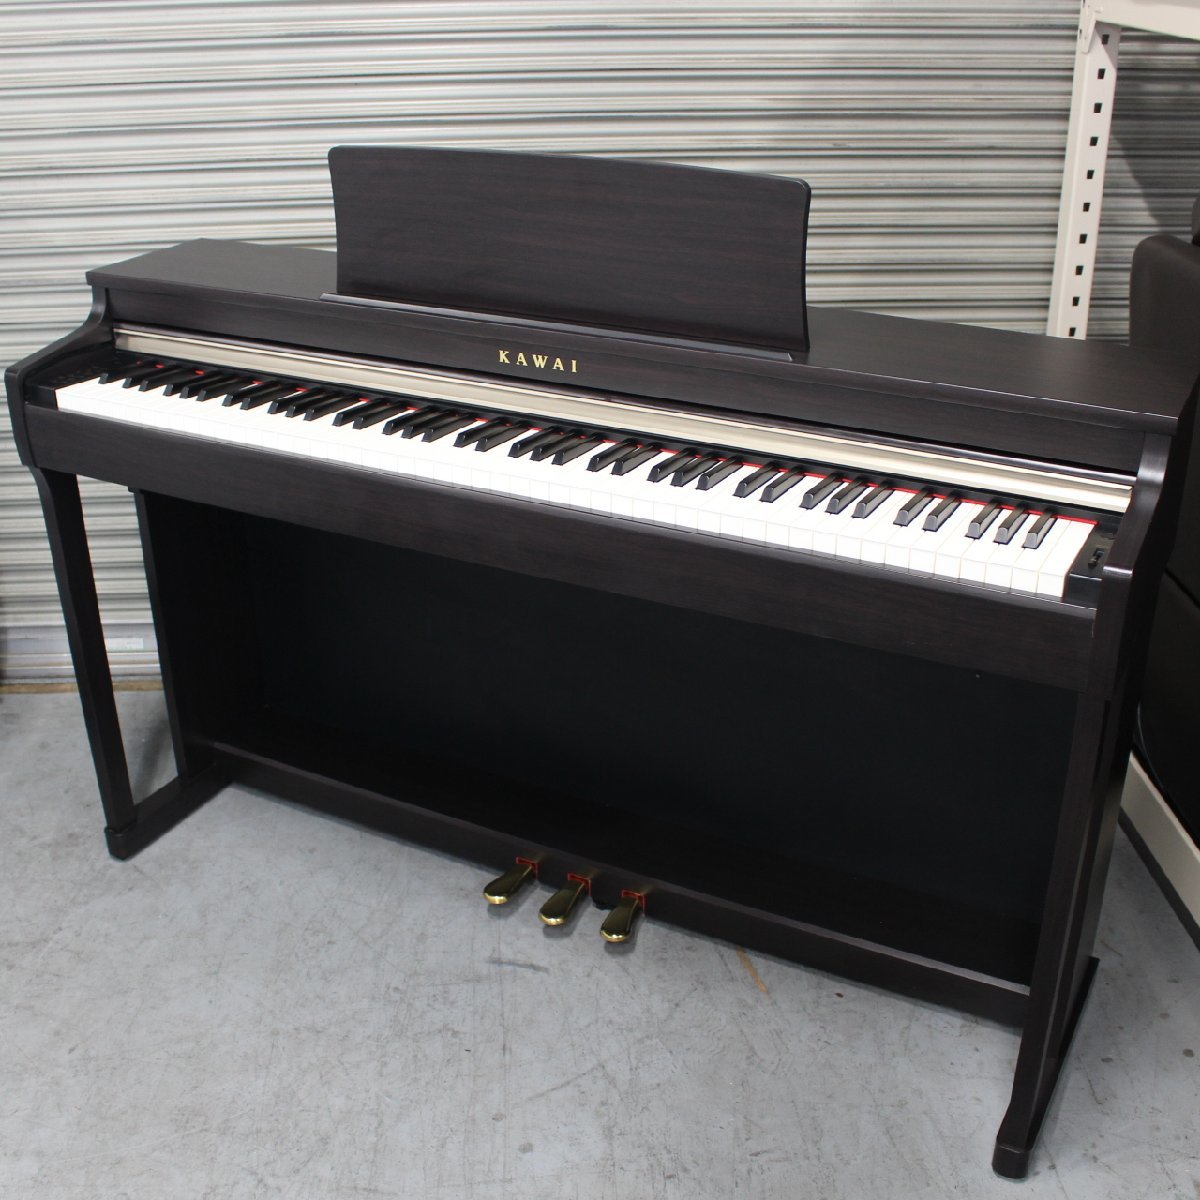 東京都杉並区にて カワイ 電子ピアノ CN25R 88鍵 2016年製 を出張買取させて頂きました。